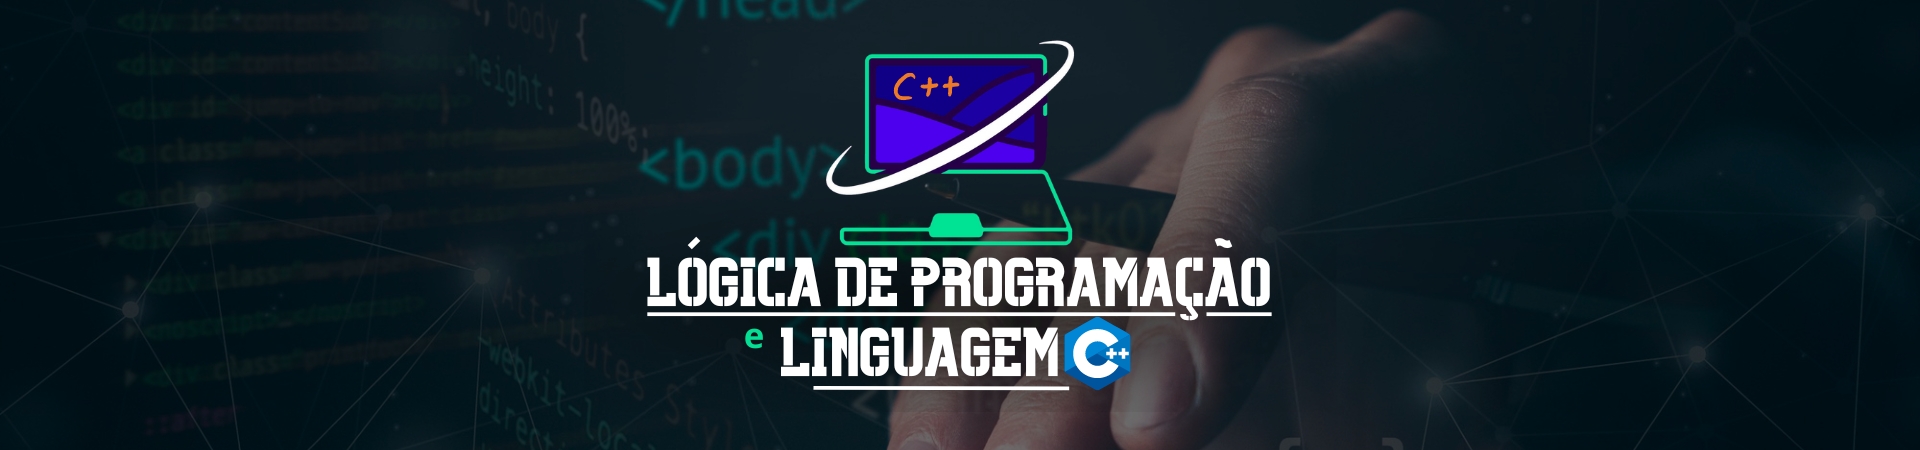 Lógica de programação e linguagem C